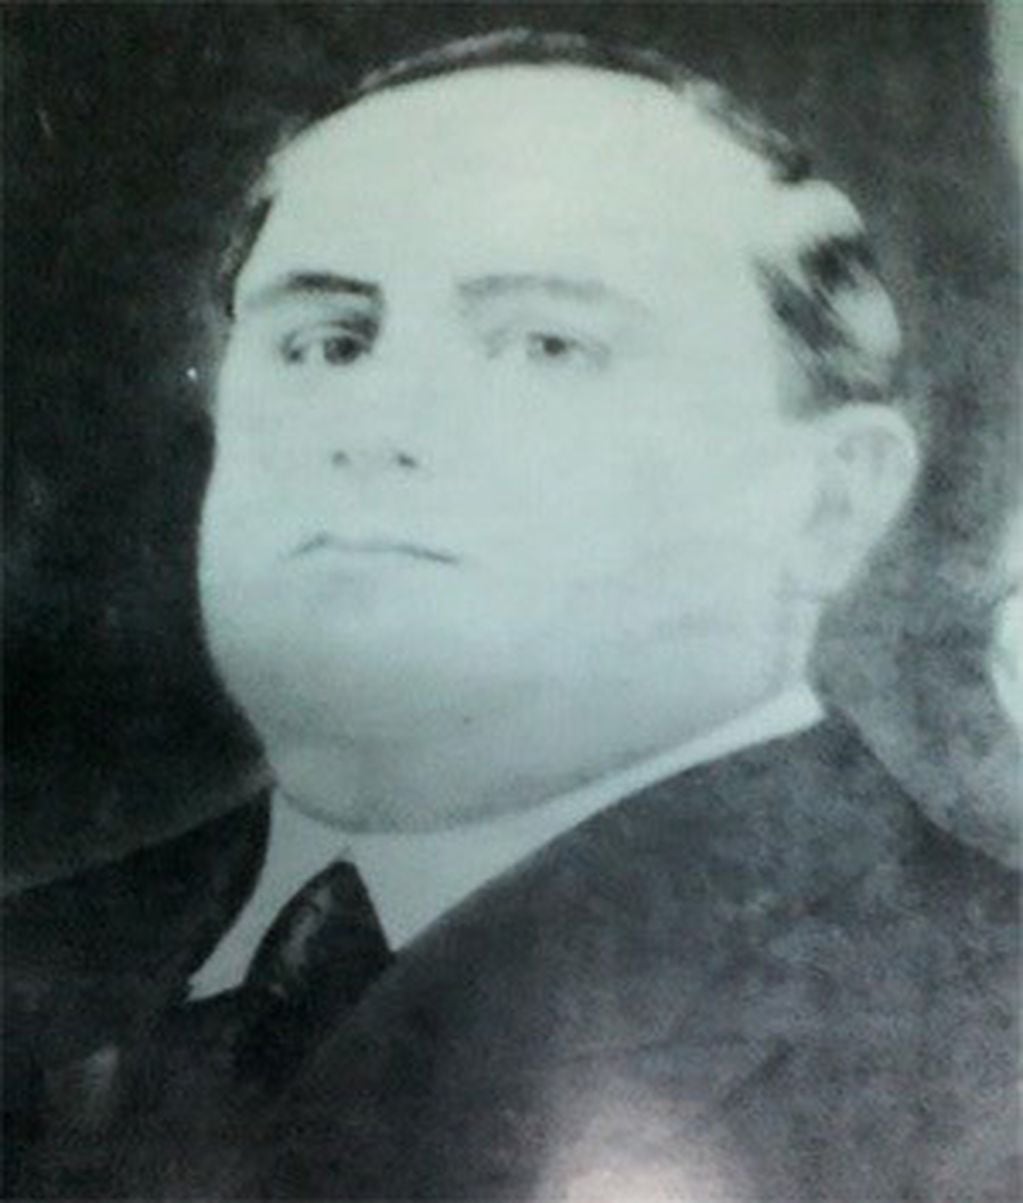 El gobernador Fernando Centeno quien promovió y autorizó el genocidio.